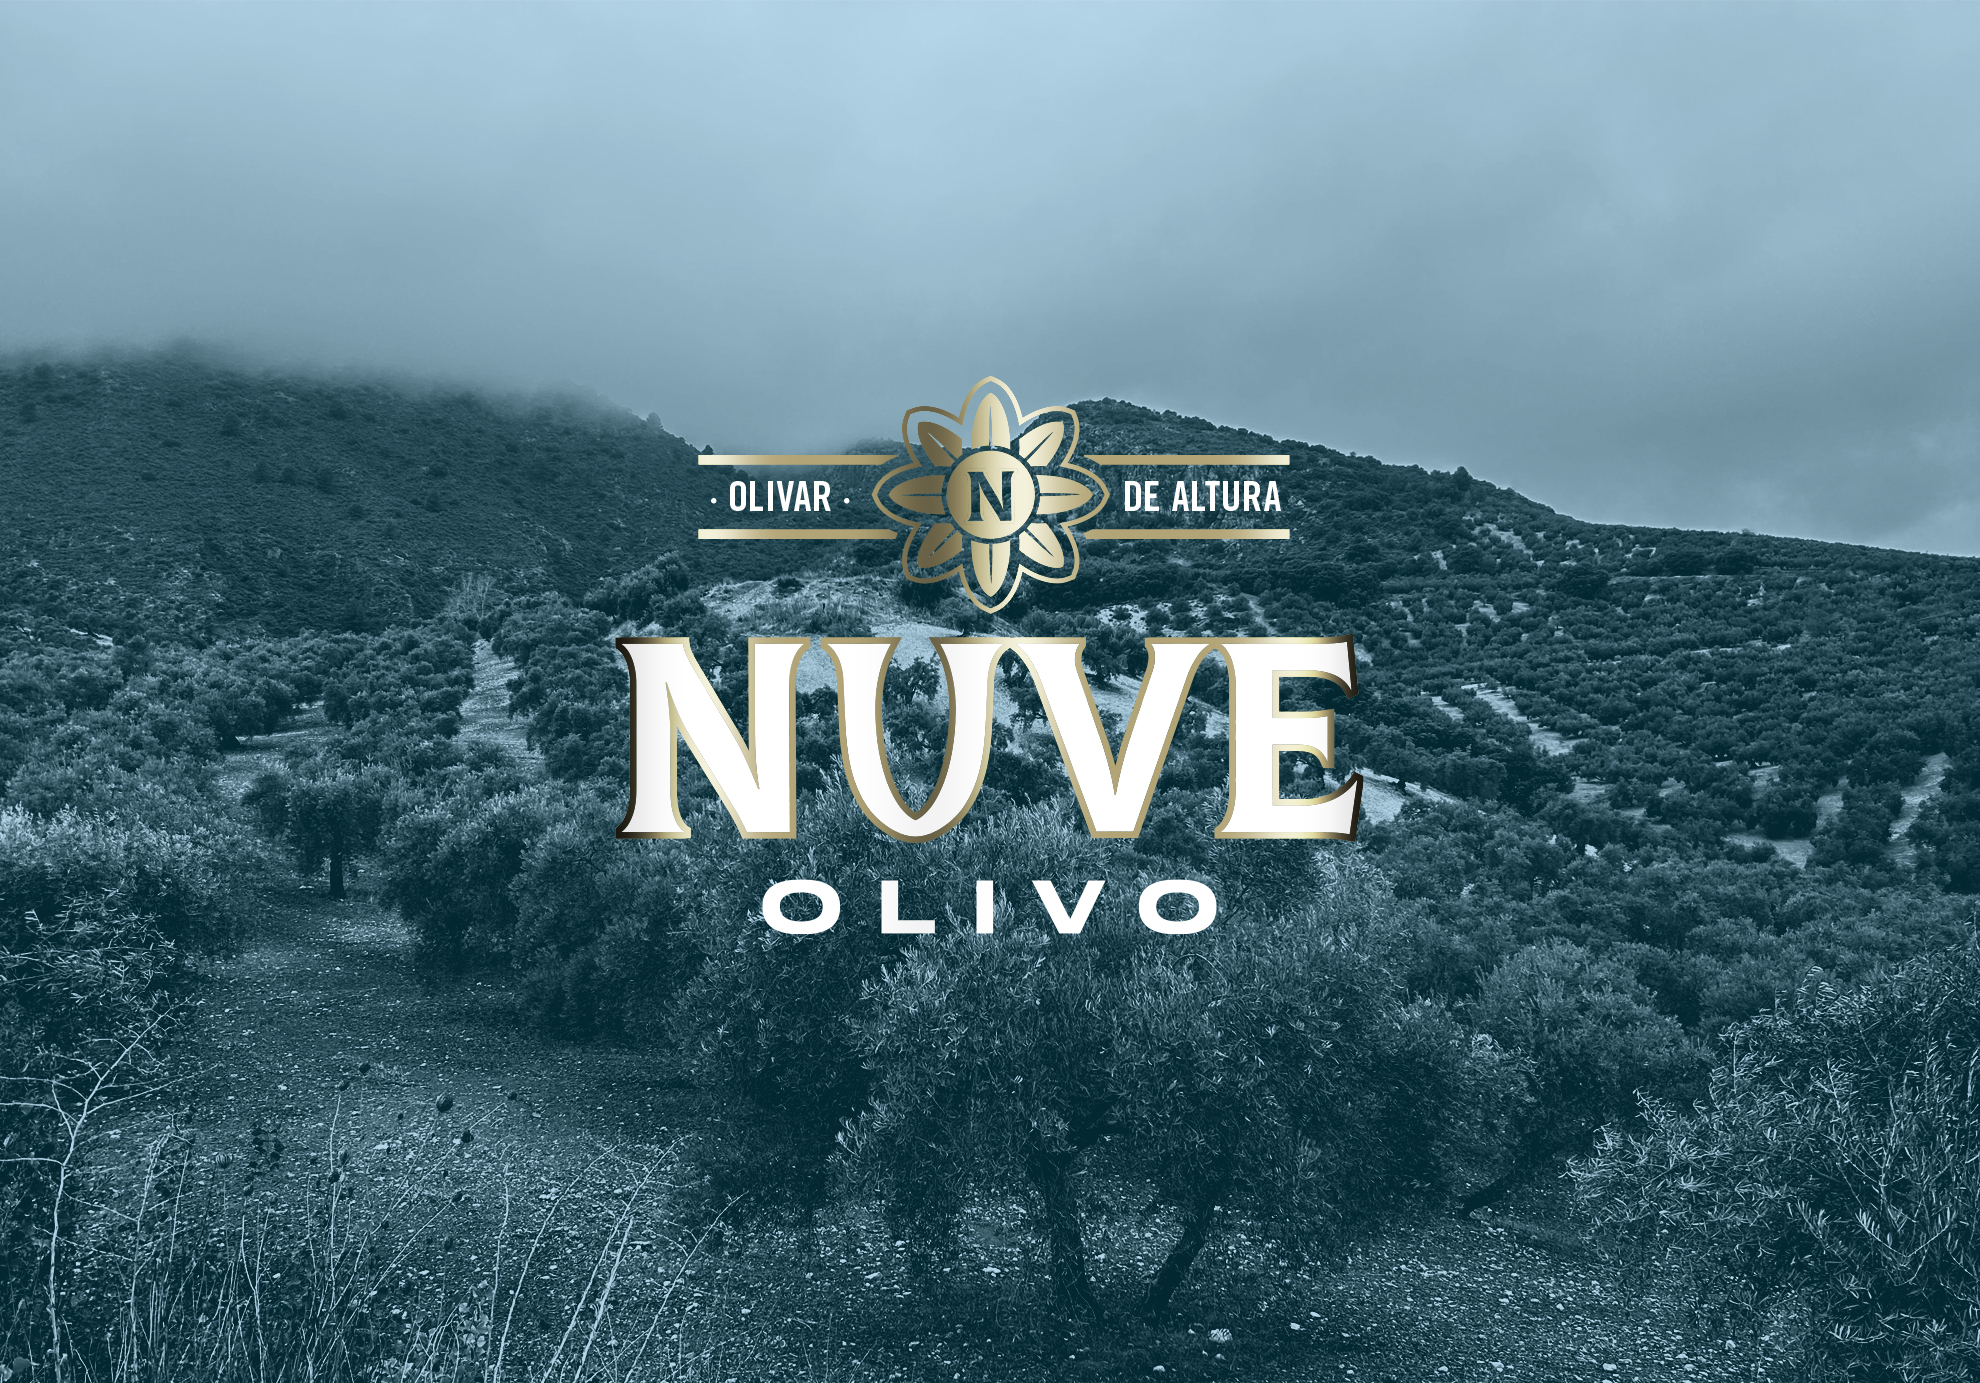 Nuve-olivo-diseño-de-etiqueta-aceite-oliva